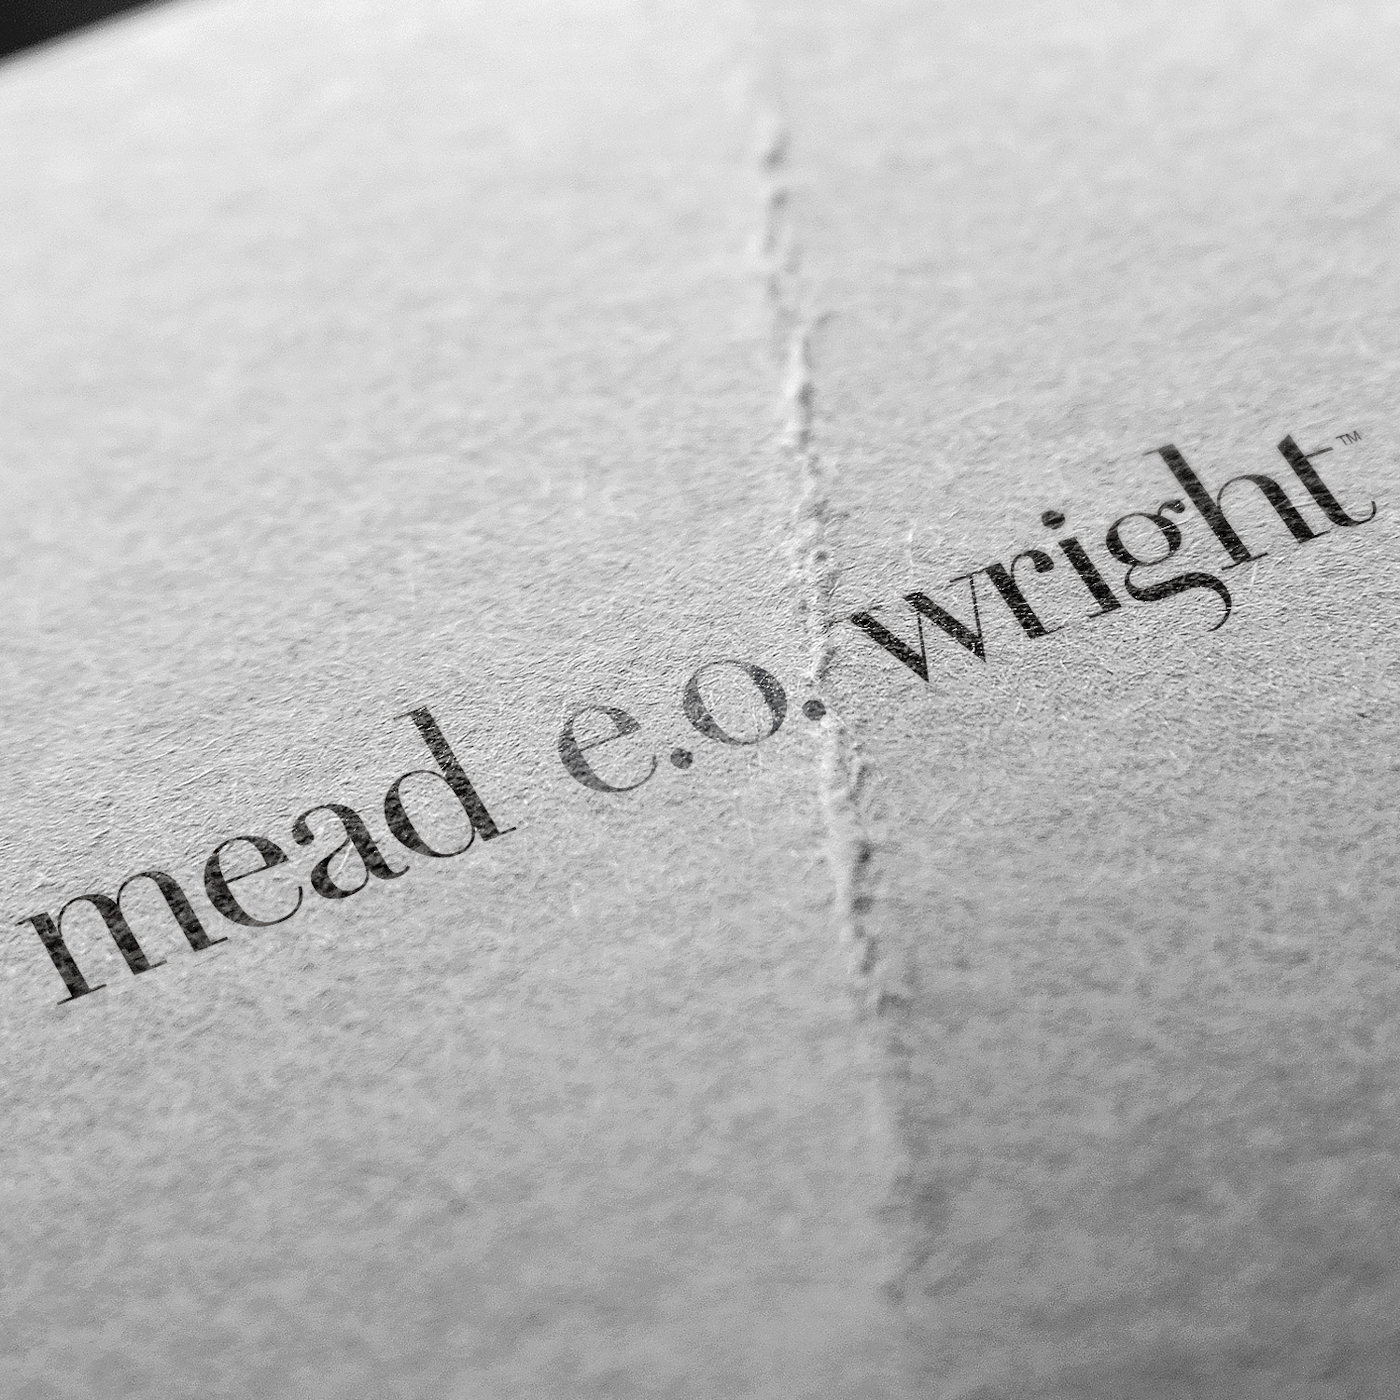 Mead E.O. Wright